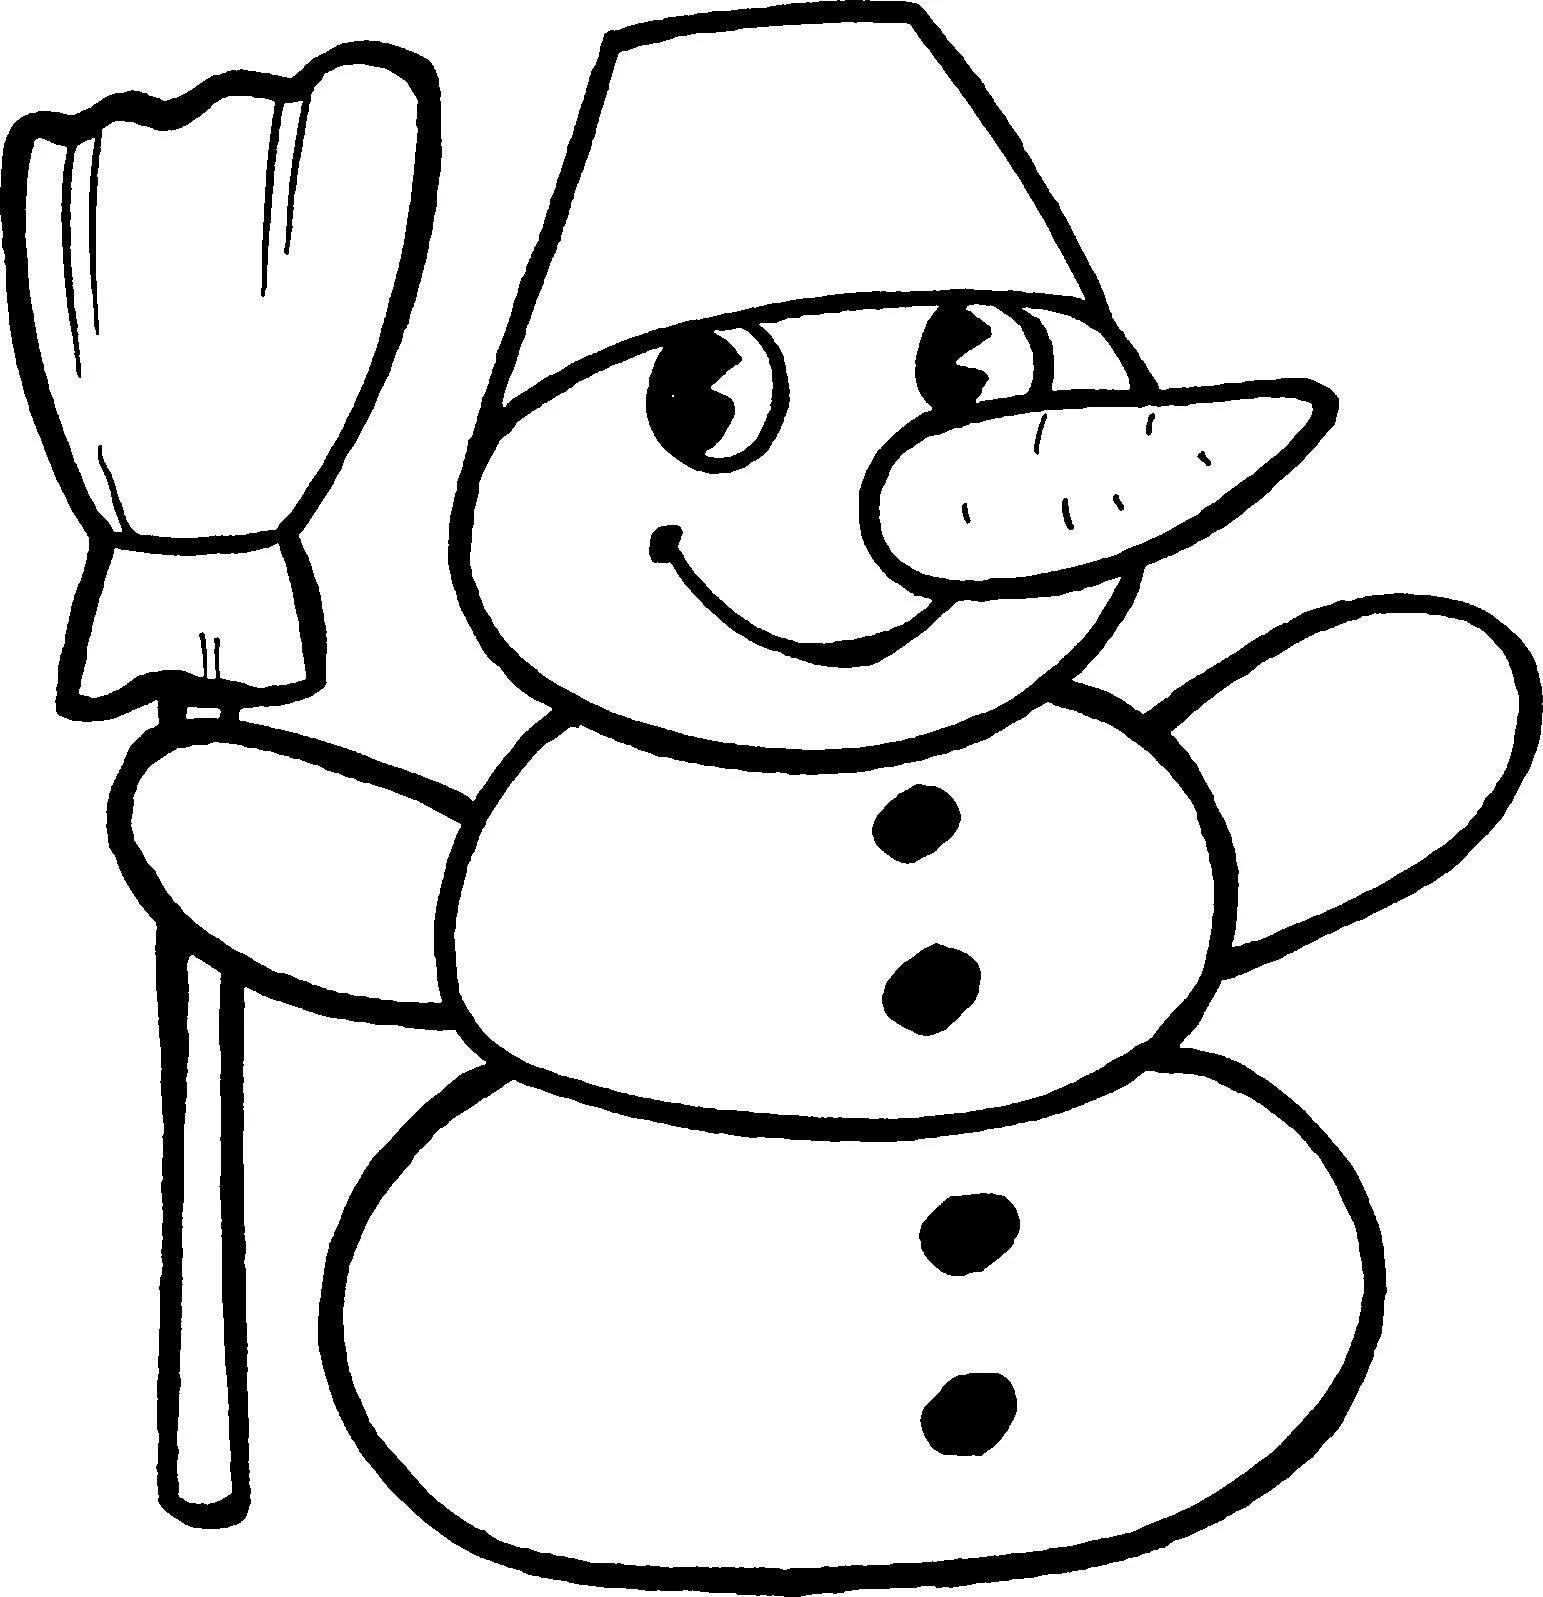 Раскраска Снеговик в шапке с помпоном распечатать бесплатно